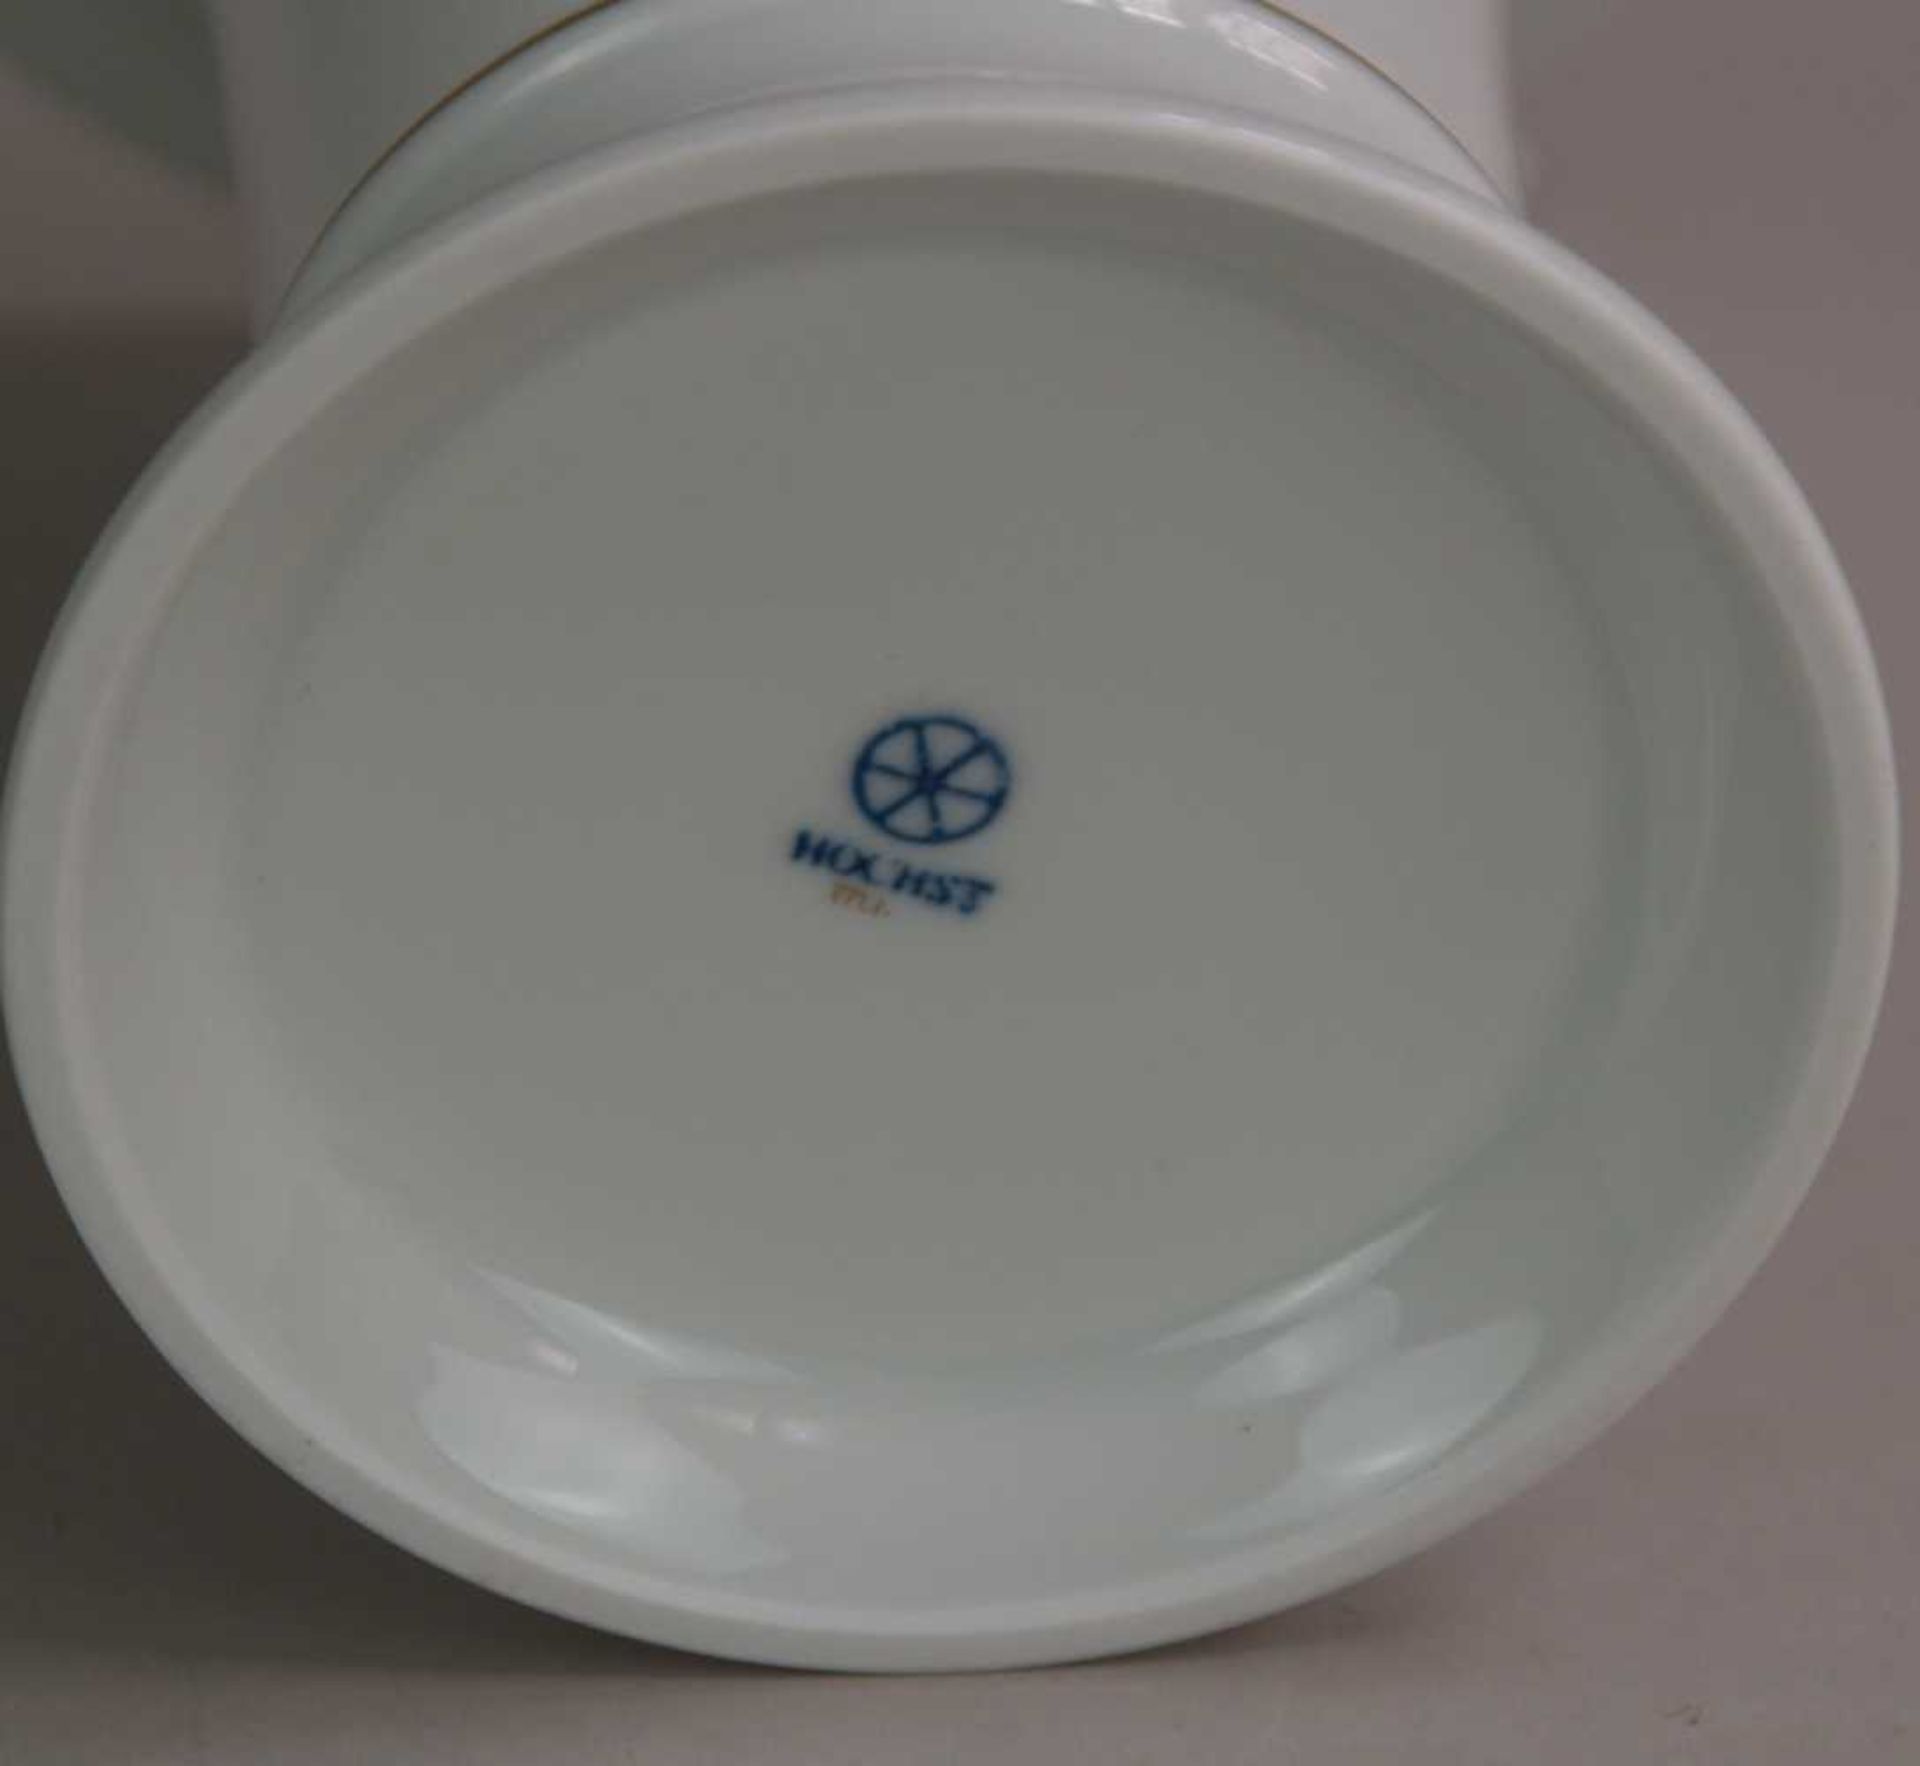 Trichtervase - Hoechst, blaue Radmarke mit Malerzeichen, 20 Jhdt. Trompetenform mit auskragendem - Bild 3 aus 3